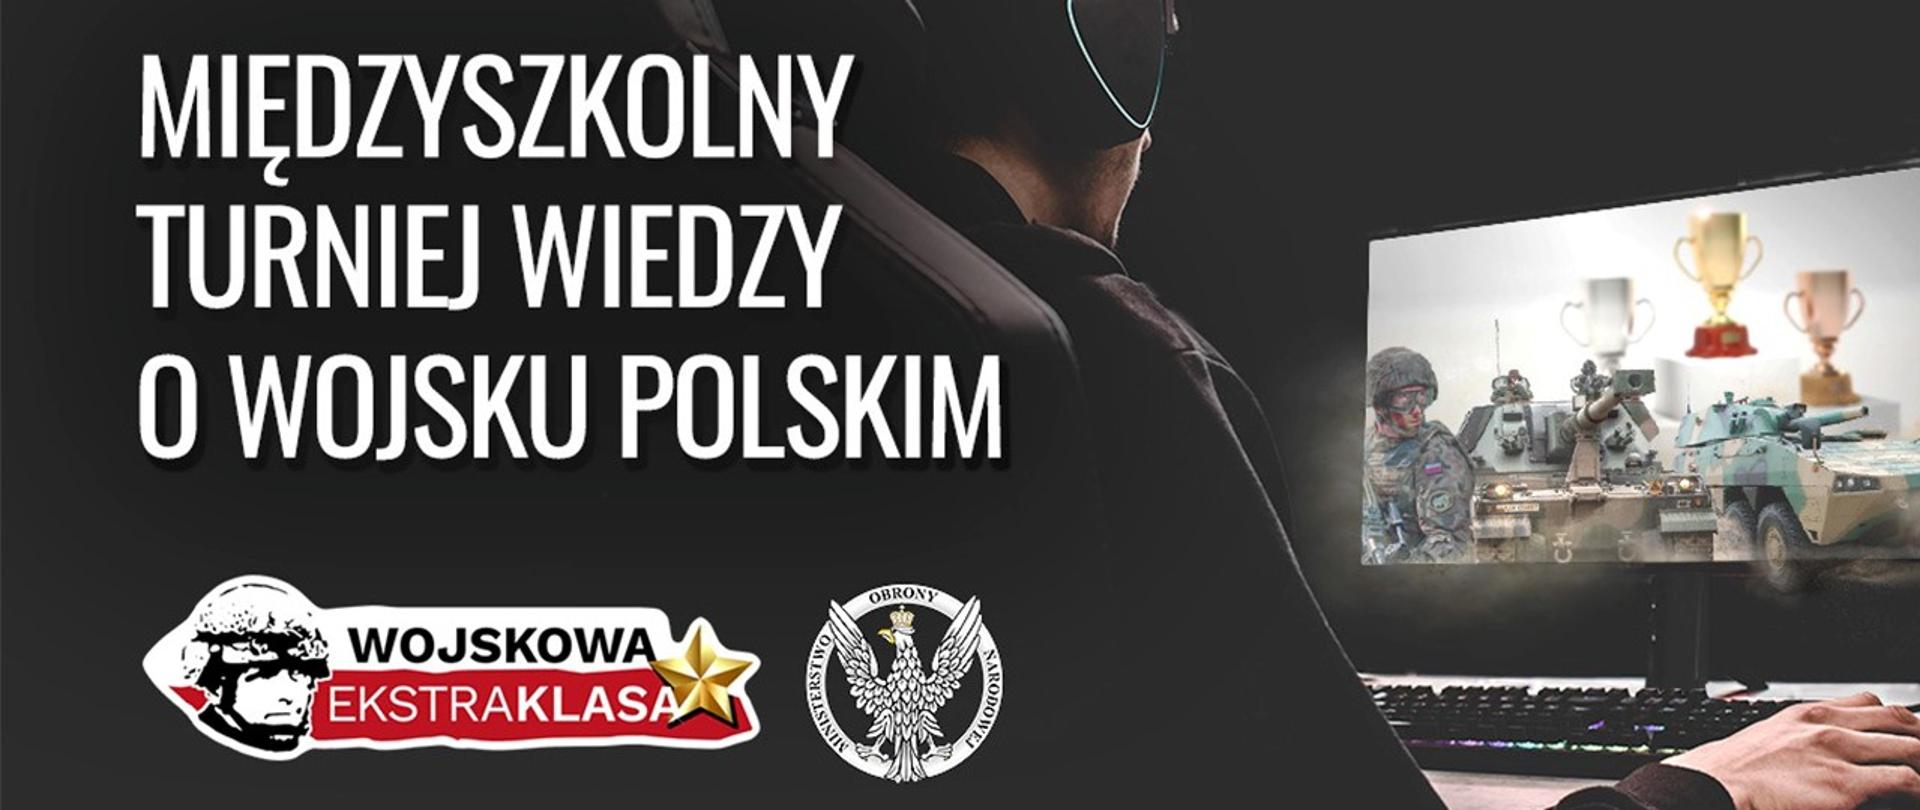 turniej wiedzy o wojsku polskim